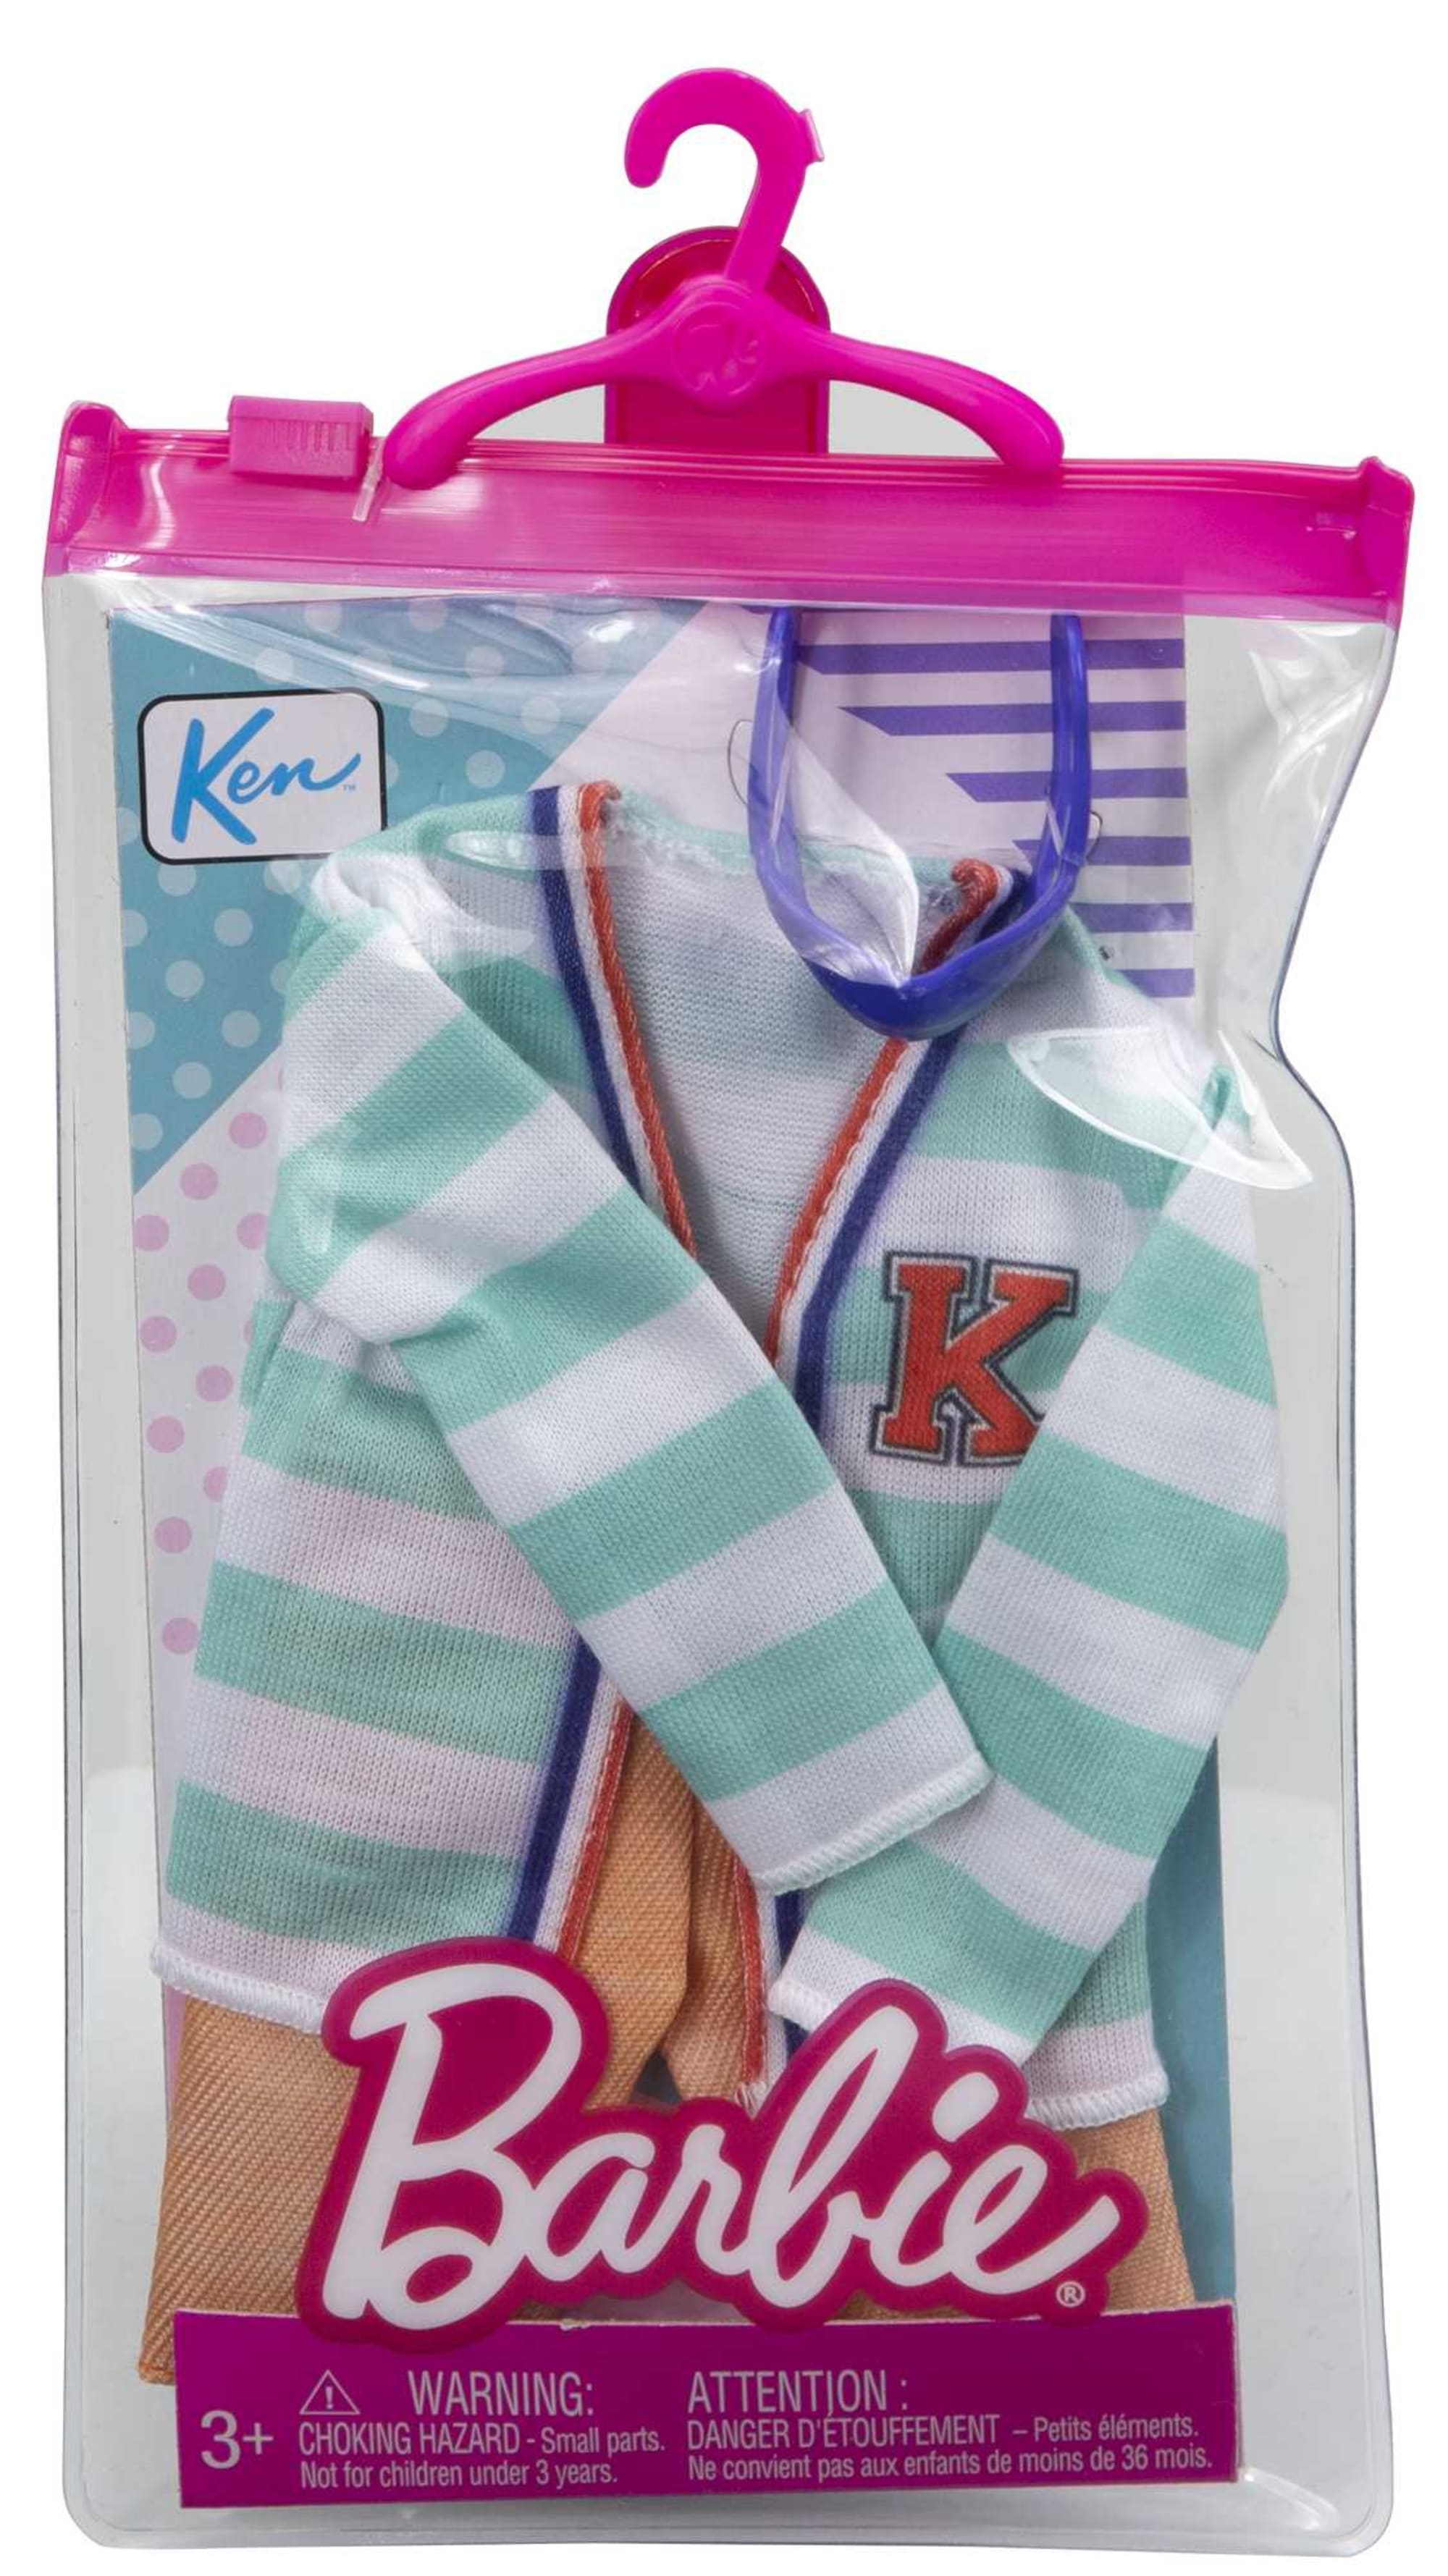 Ensemble de vêtements et accessoires pour poupées Ken Barbie comprenant 3  hauts, 3 pantalons, 6 chaussures, 1 paire de lunettes et 1 paire  d'écouteurs